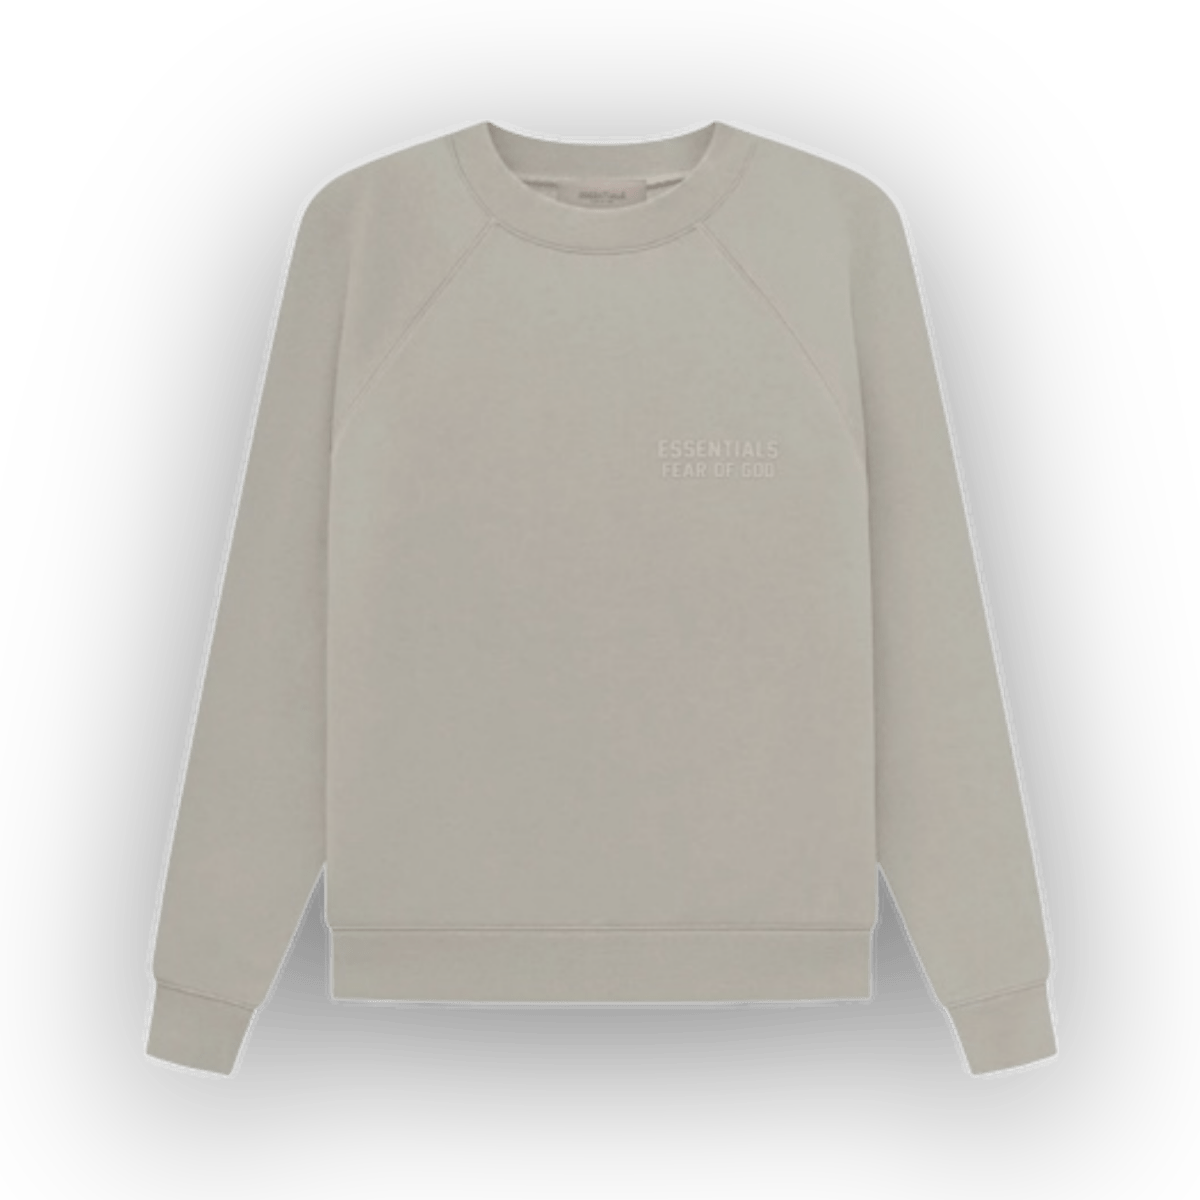 Essentials Fear of God Seal Grey Sweatshirt - Sweatshirt - Jawns on Fire Sneakers & Streetwear